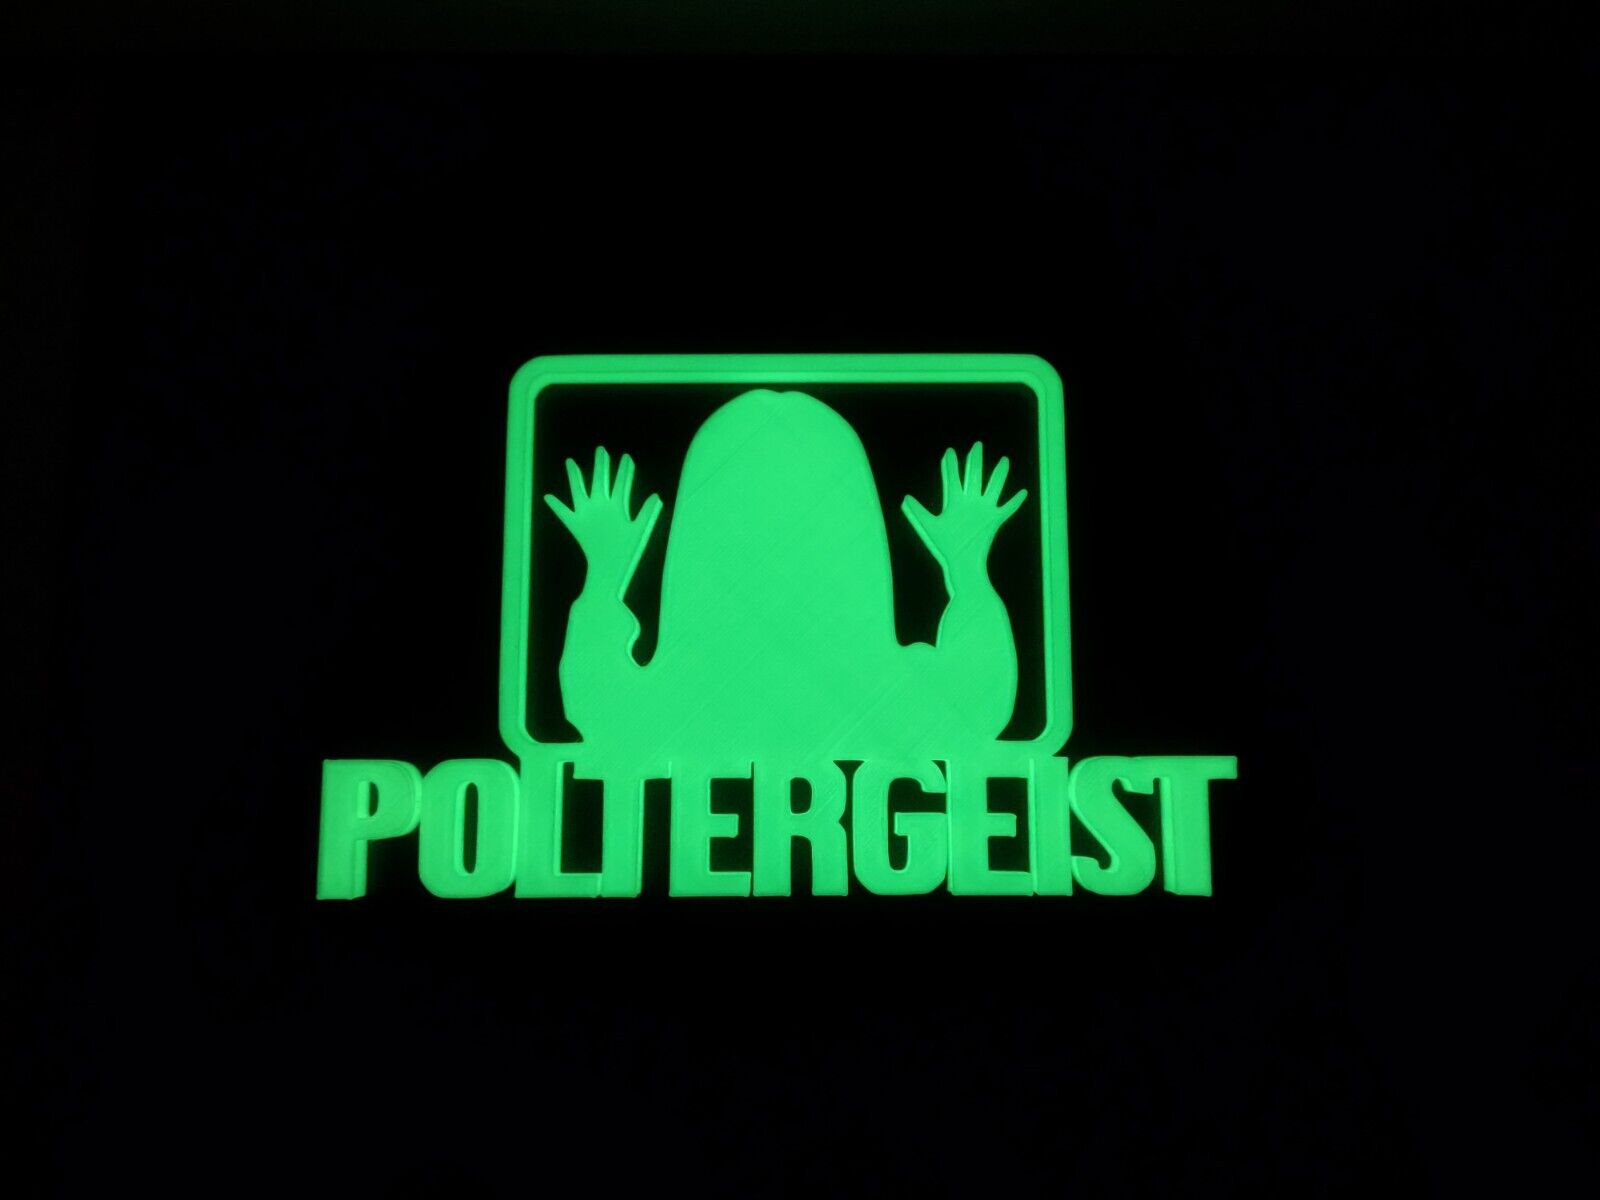 Poltergeist GITD Display Sign Glow in the Dark